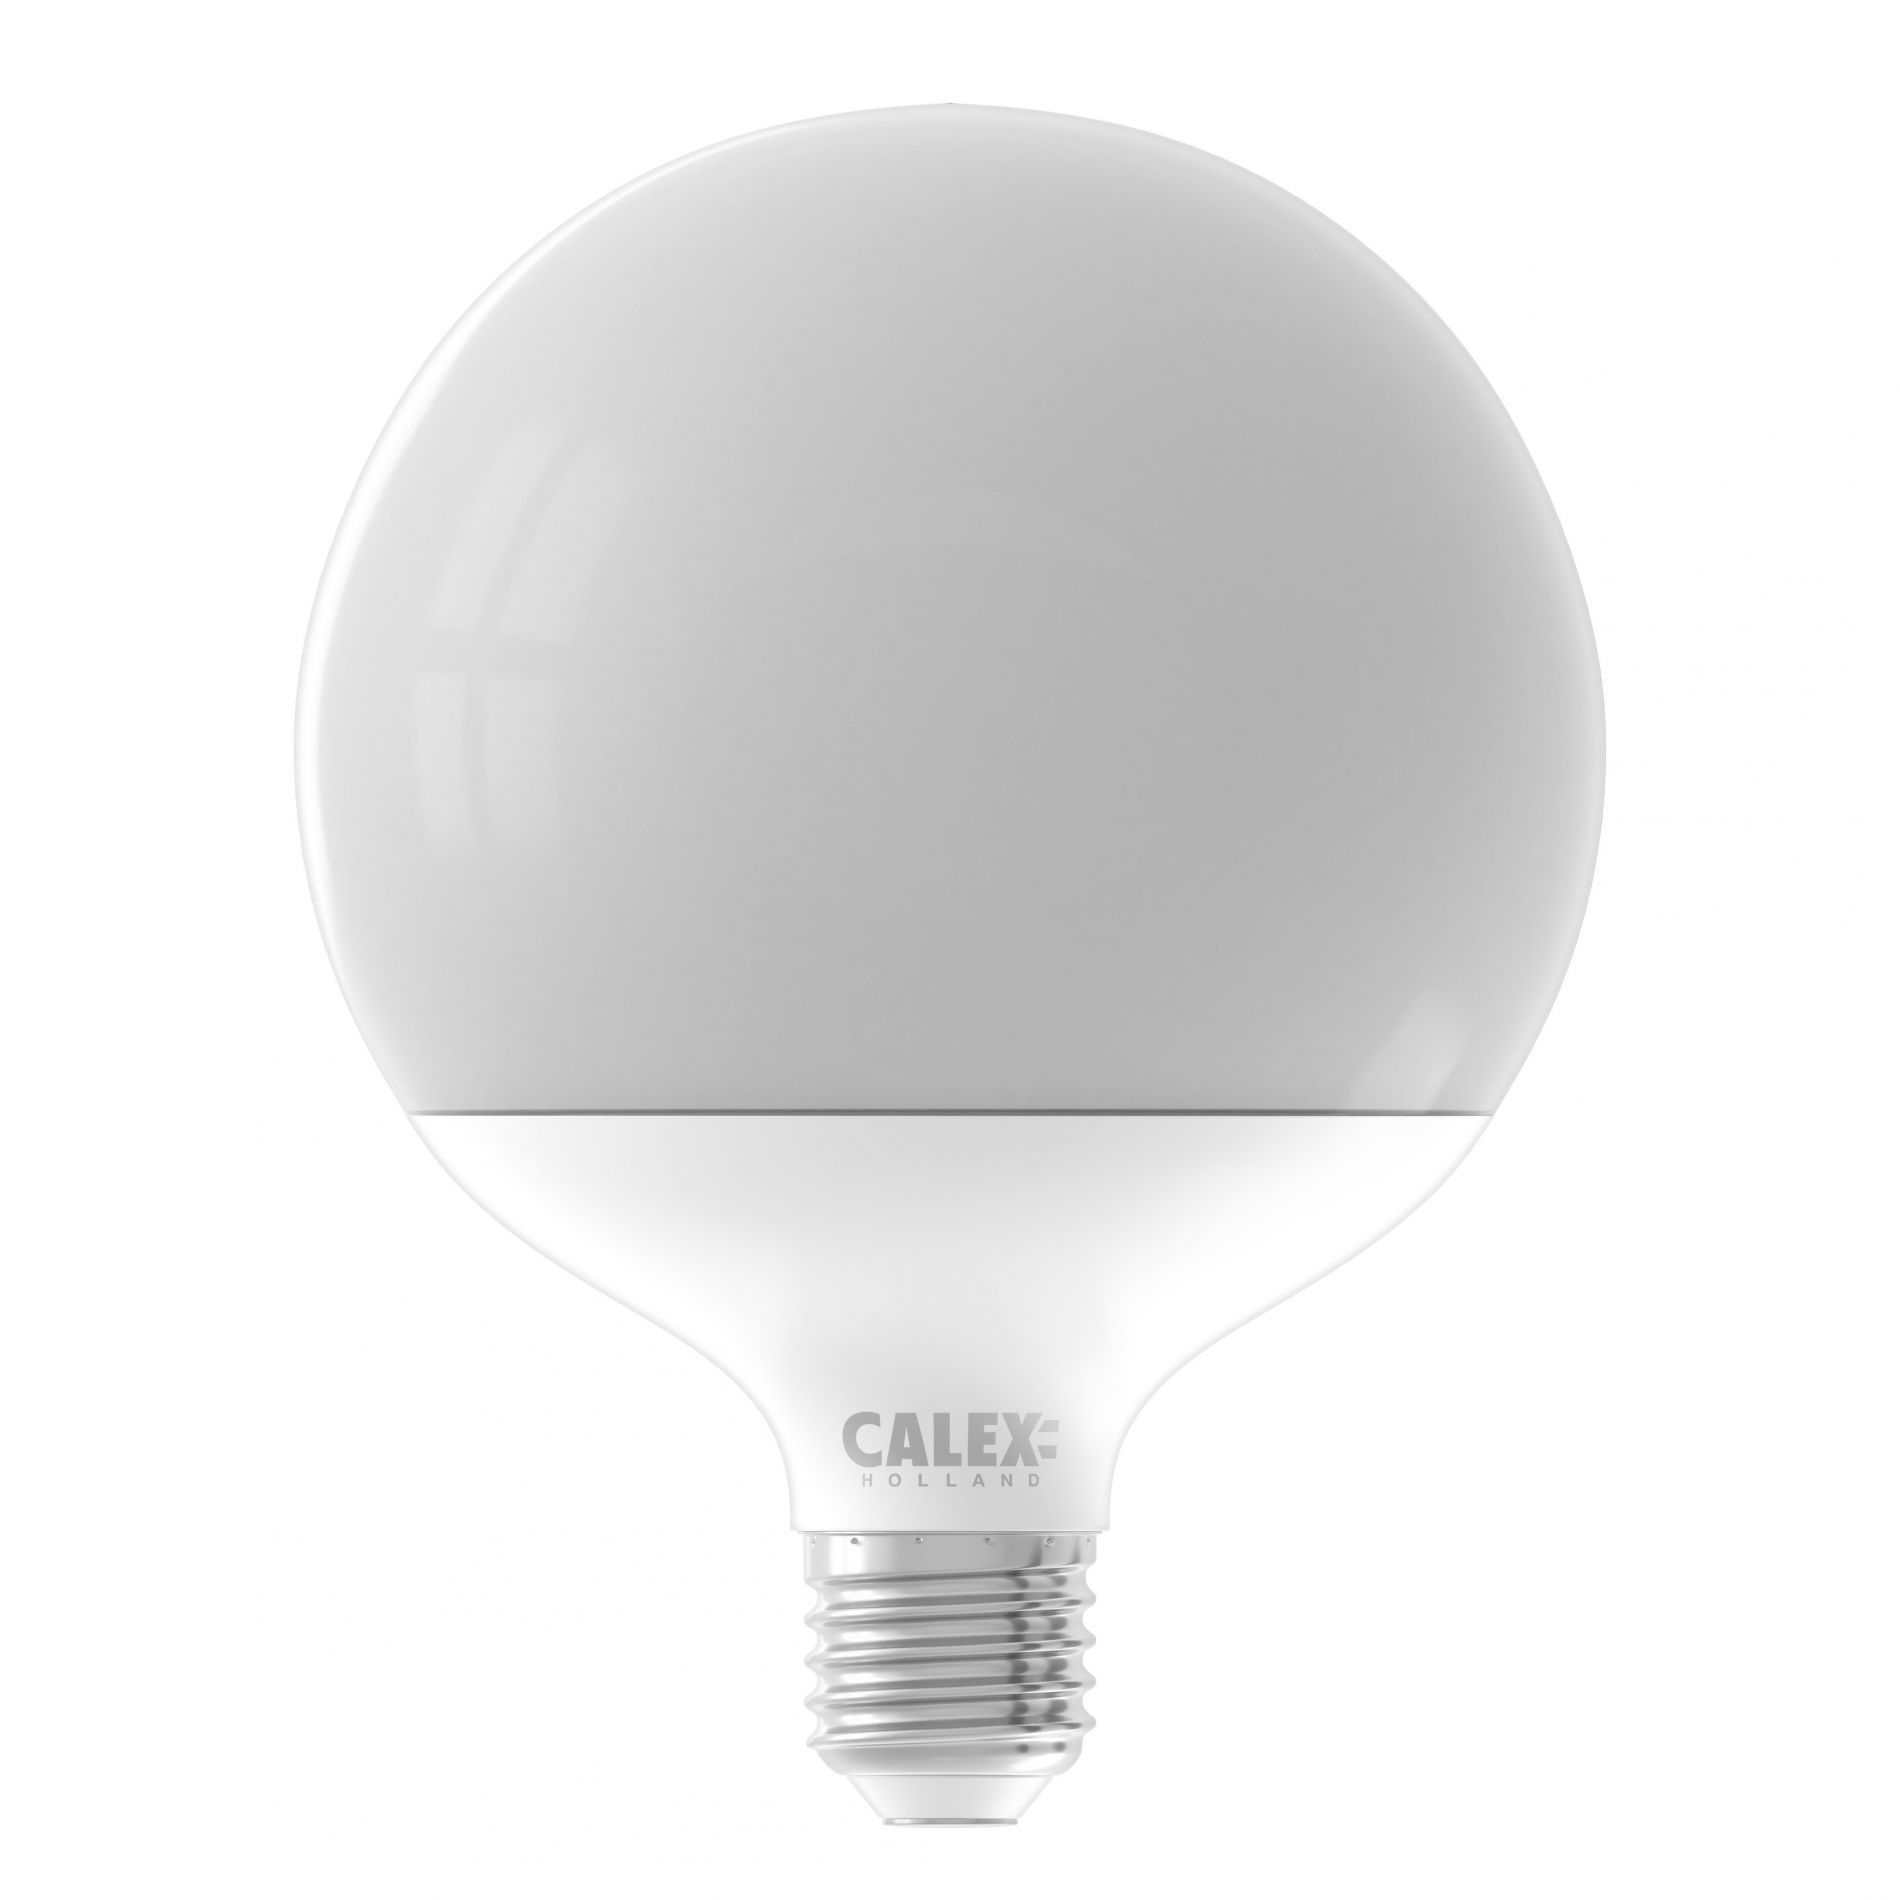 Ampoule LED dimmable E27 OPALE éclairage blanc froid 15W 1600 lumens Ø12cm